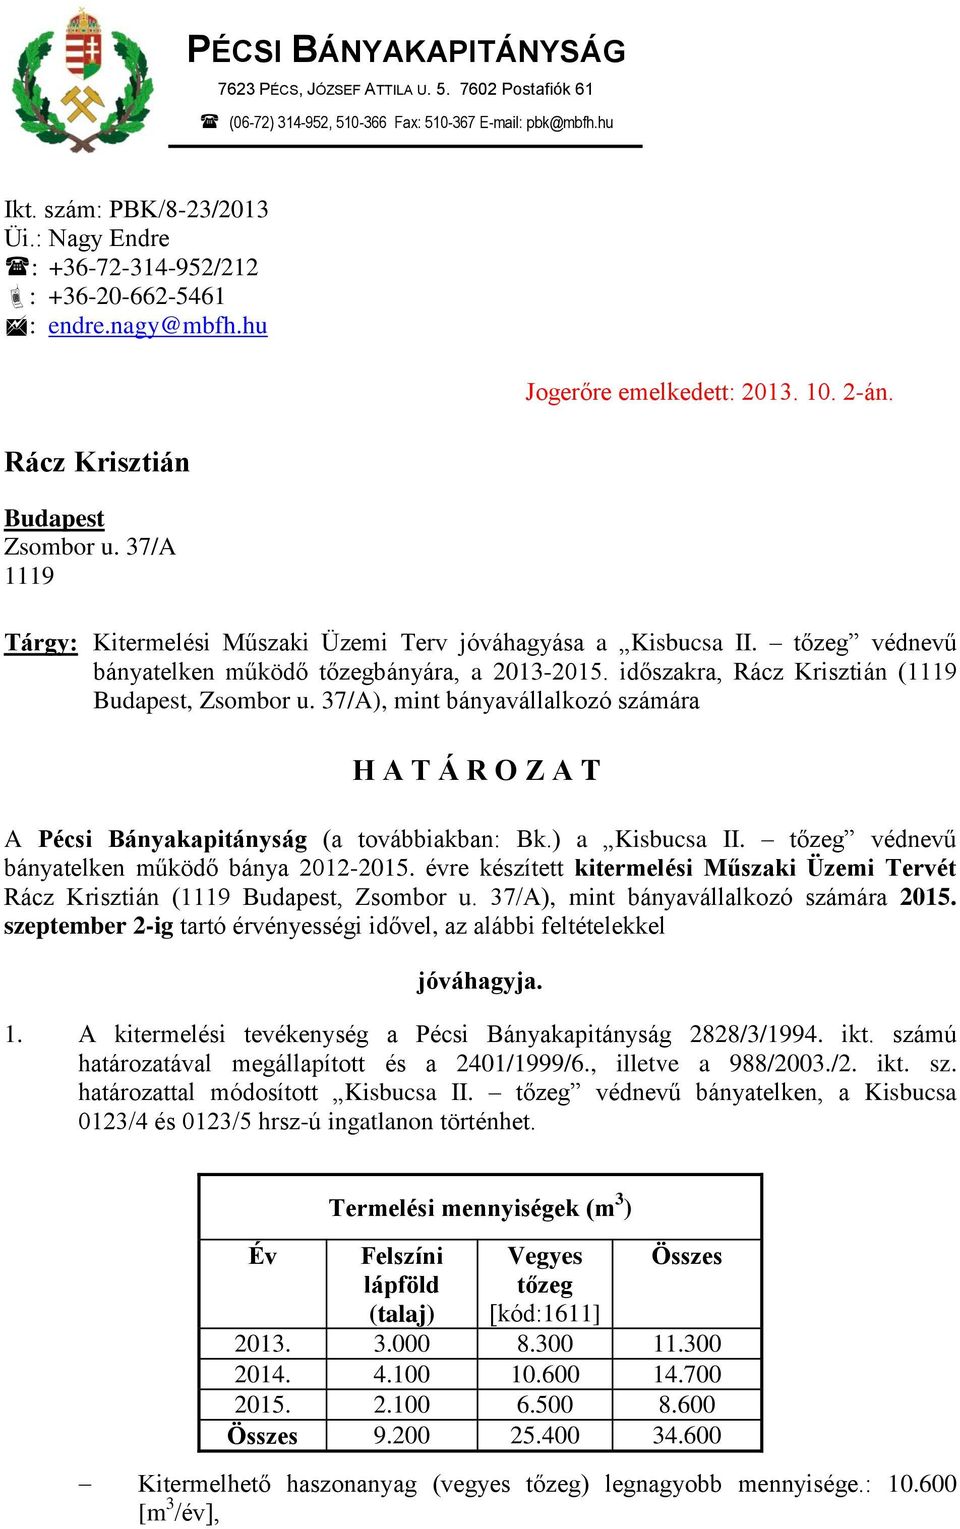 Tárgy: Kitermelési Műszaki Üzemi Terv jóváhagyása a Kisbucsa II. tőzeg védnevű bányatelken működő tőzegbányára, a 2013-2015. időszakra, Rácz Krisztián (1119 Budapest, Zsombor u.